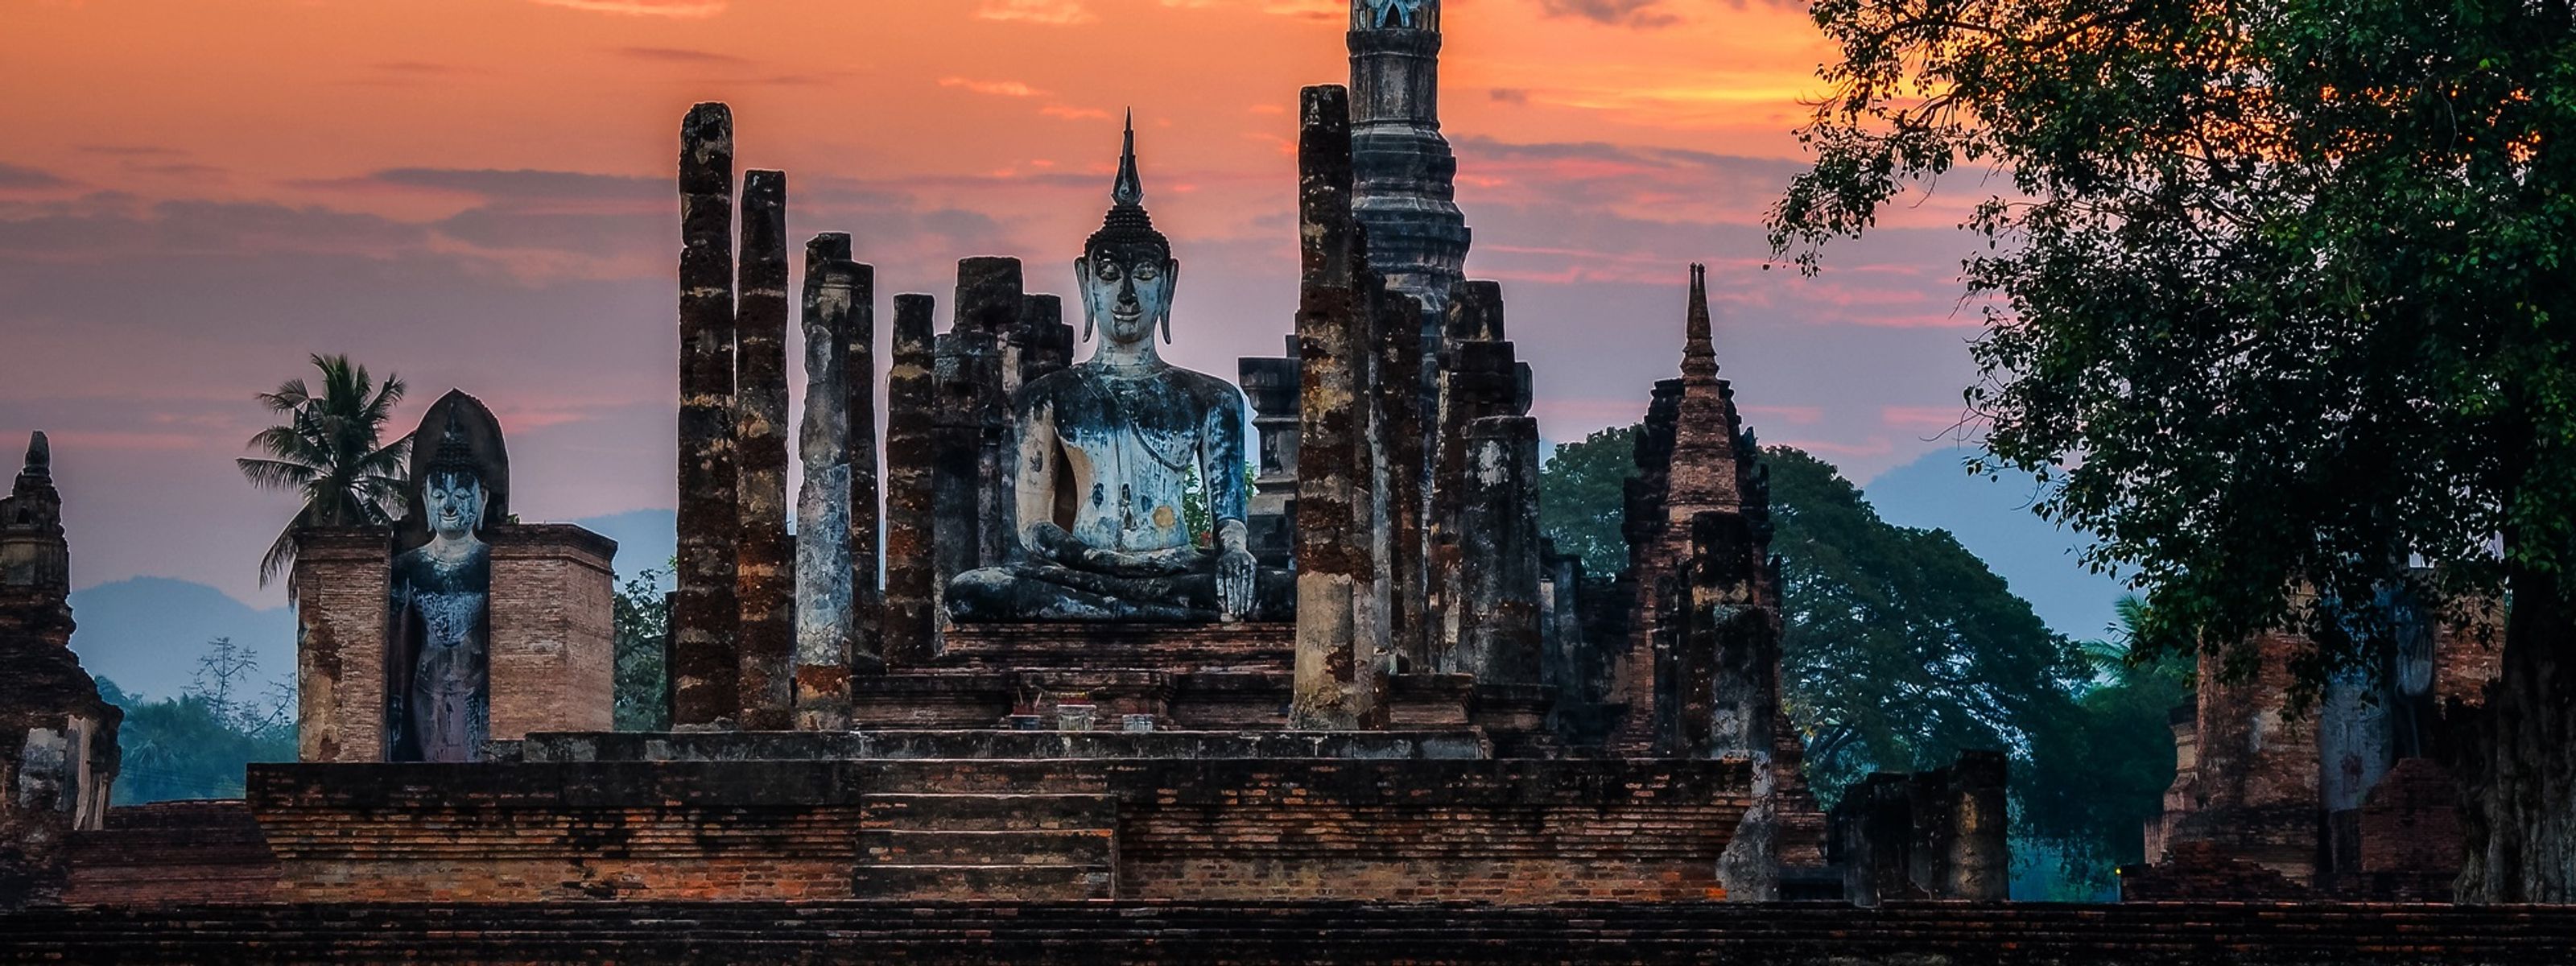 Thailands historische Königsstädte & Strandleben auf Koh Chang